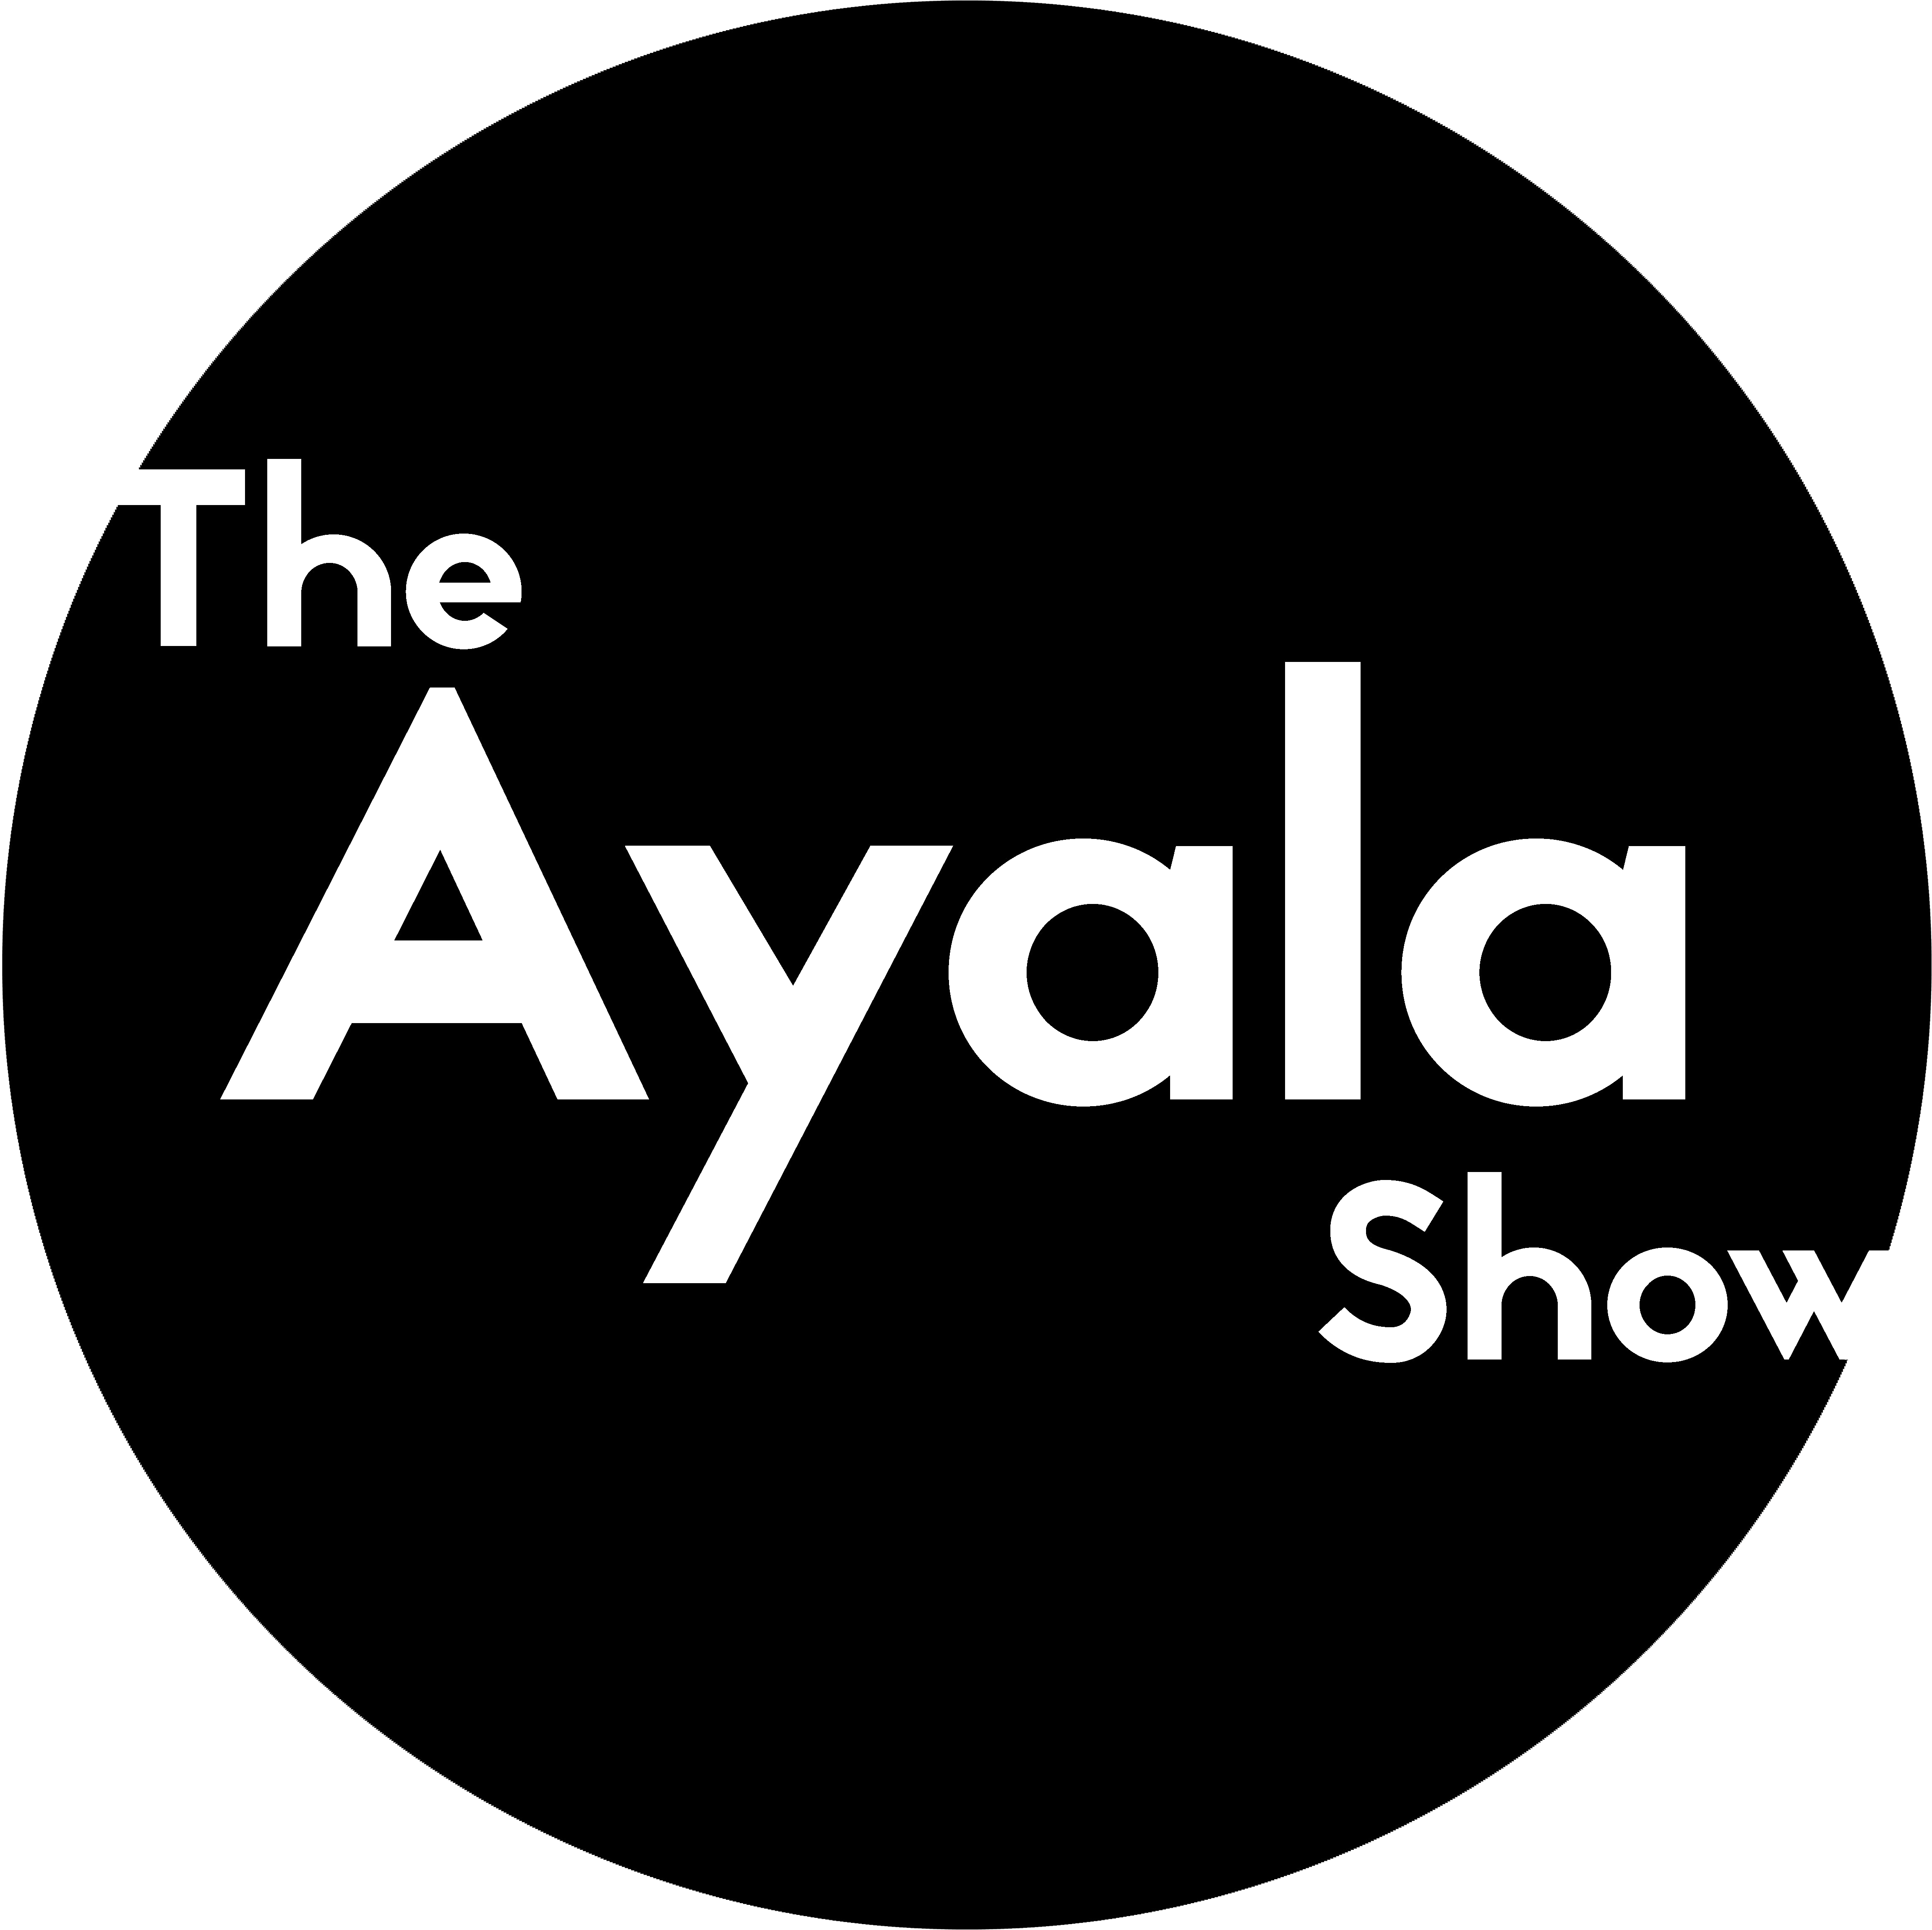 Ayala Logo - The Ayala Show